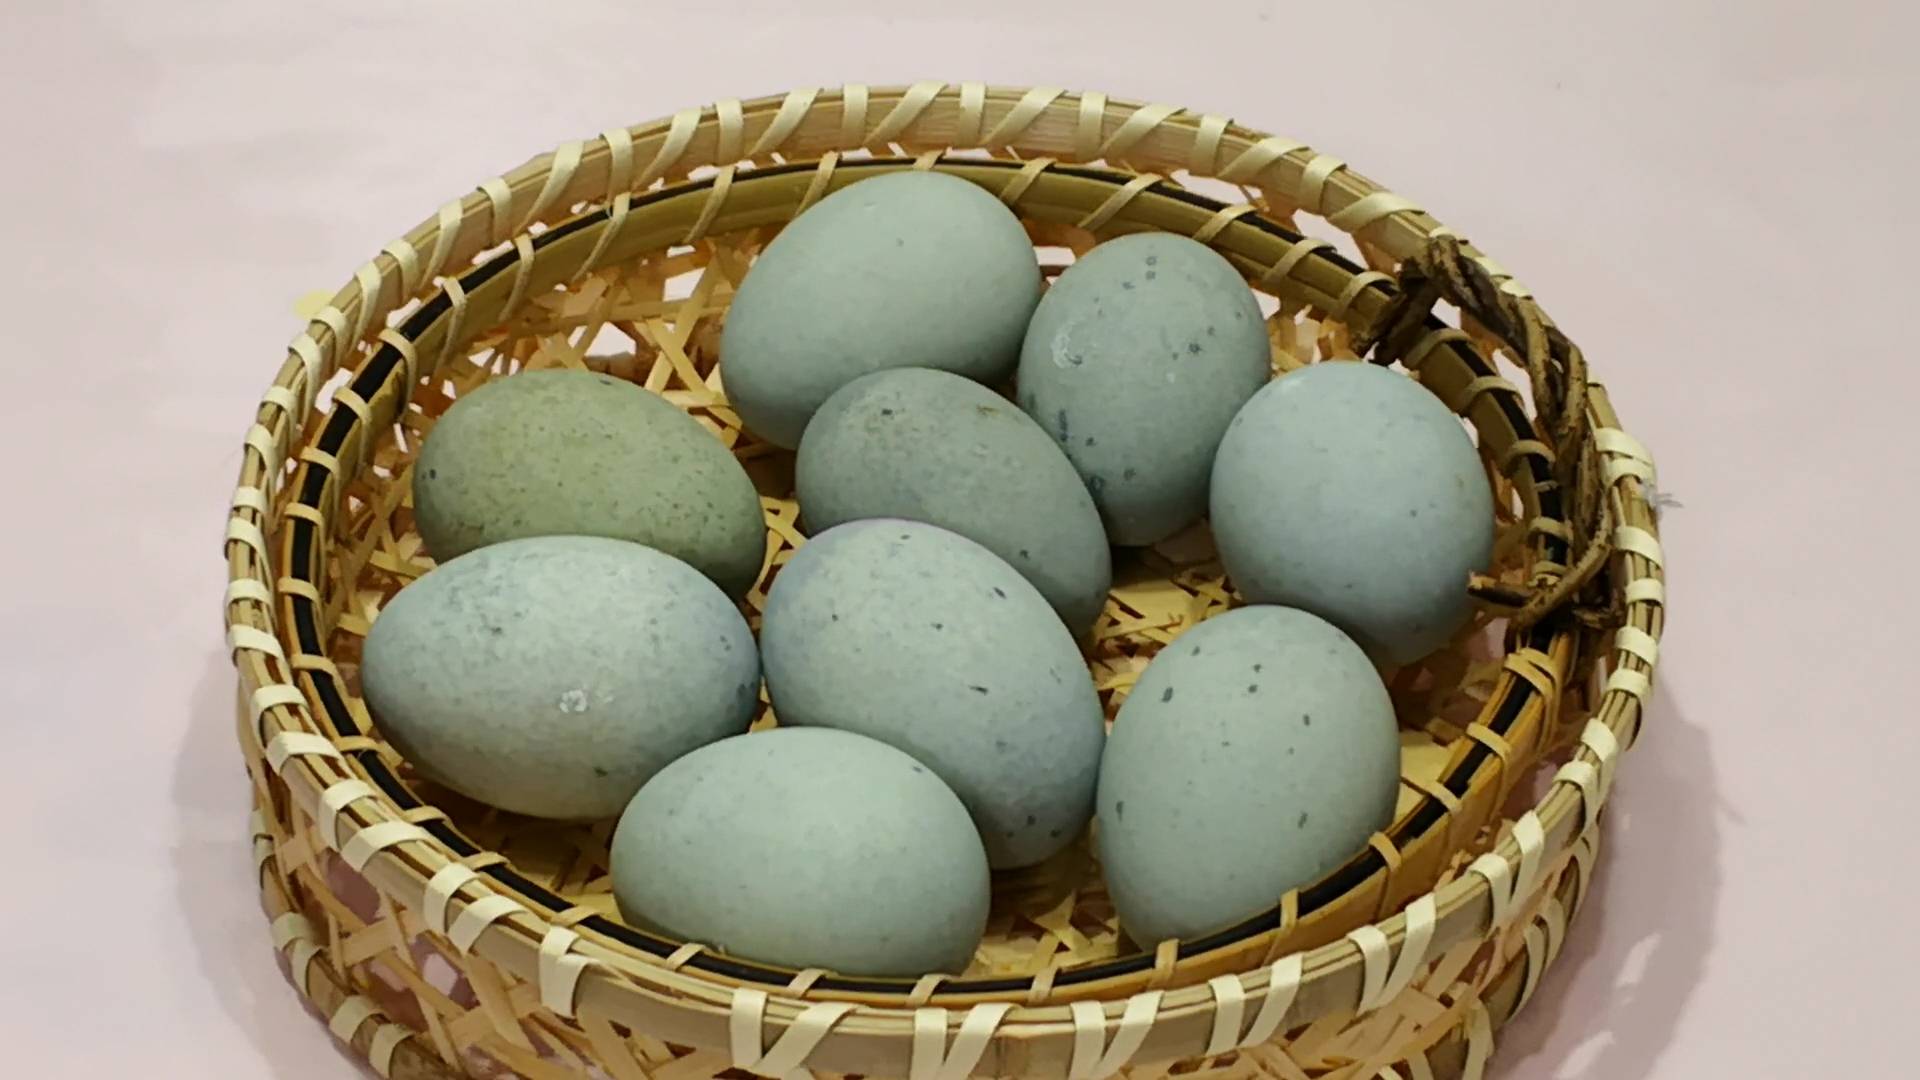 在家自己做 松花蛋 不含添加剂 7天就能吃上 无铅的更放心 皮蛋粉